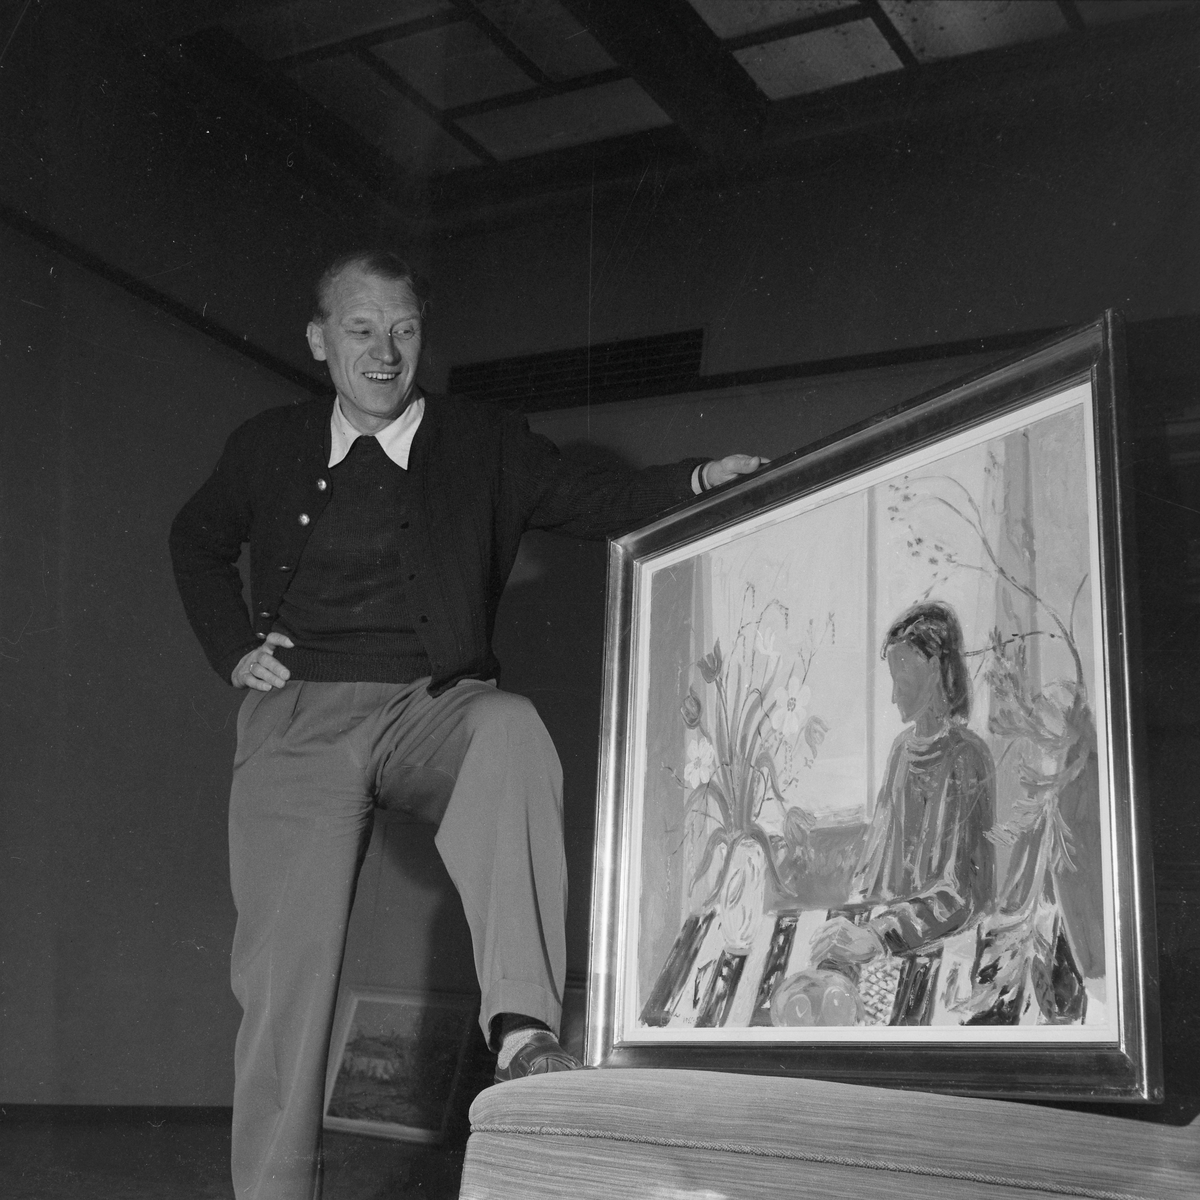 Utstilling av bilder av Ole Mæhle og maleri av Wilhelm Lundstrøm i Trondhjems Kunstforening